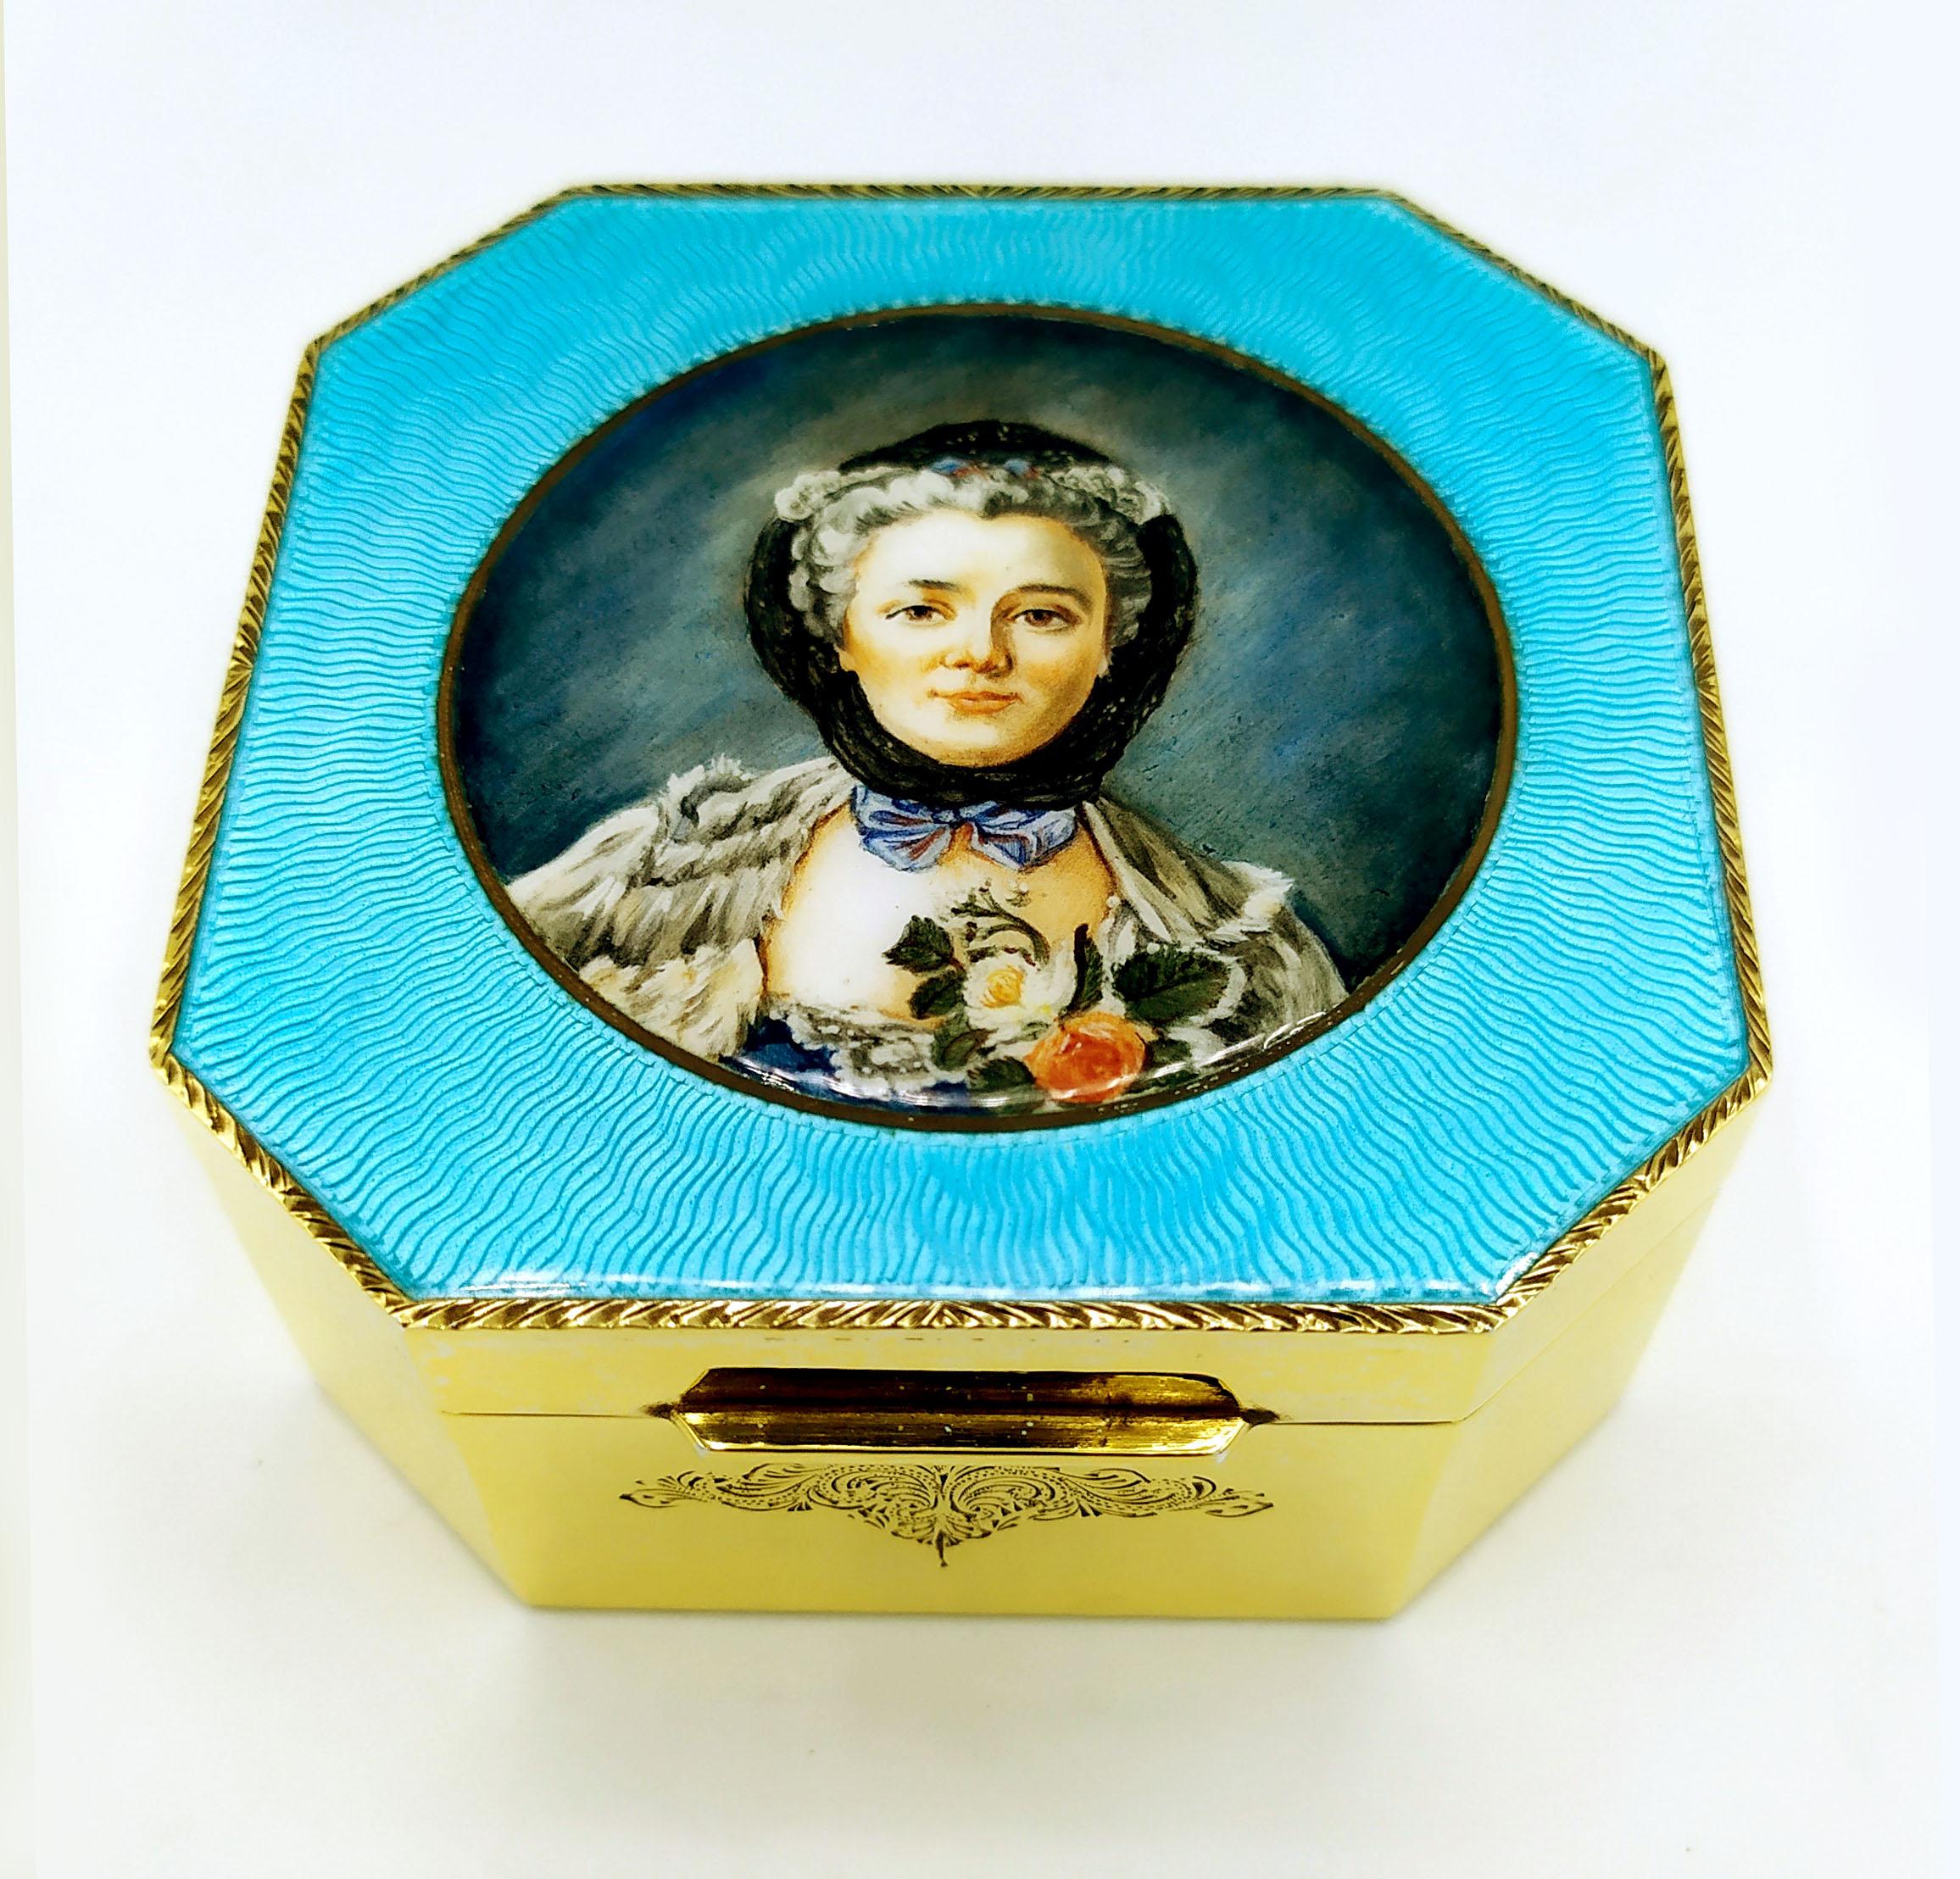 Achteckige Tischschatulle aus 925/1000 Sterlingsilber, vergoldet mit durchscheinendem, gebranntem Email auf Guillochè und schöner, handgemalter Emailminiatur der Malerin Beatrice Mellana, die das Porträt von Madame Drouais wiedergibt, das ihr Mann